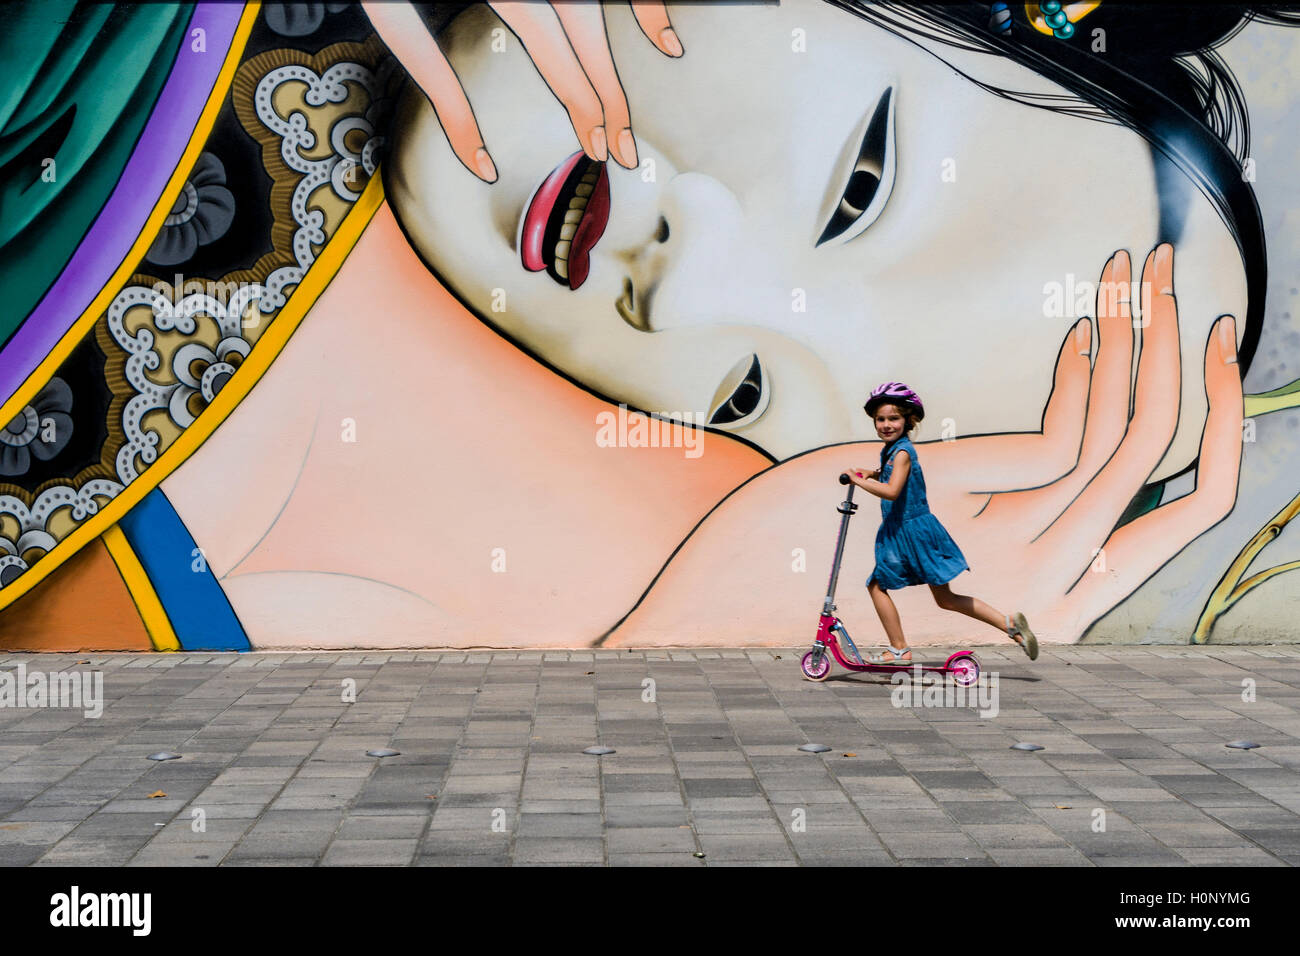 Eine bunte Graffity mit japanischen Motiv ist an einer Hauswand gemalt, ein kleines Mädchen wird auf einen Kinder Roller vorbei Stockfoto